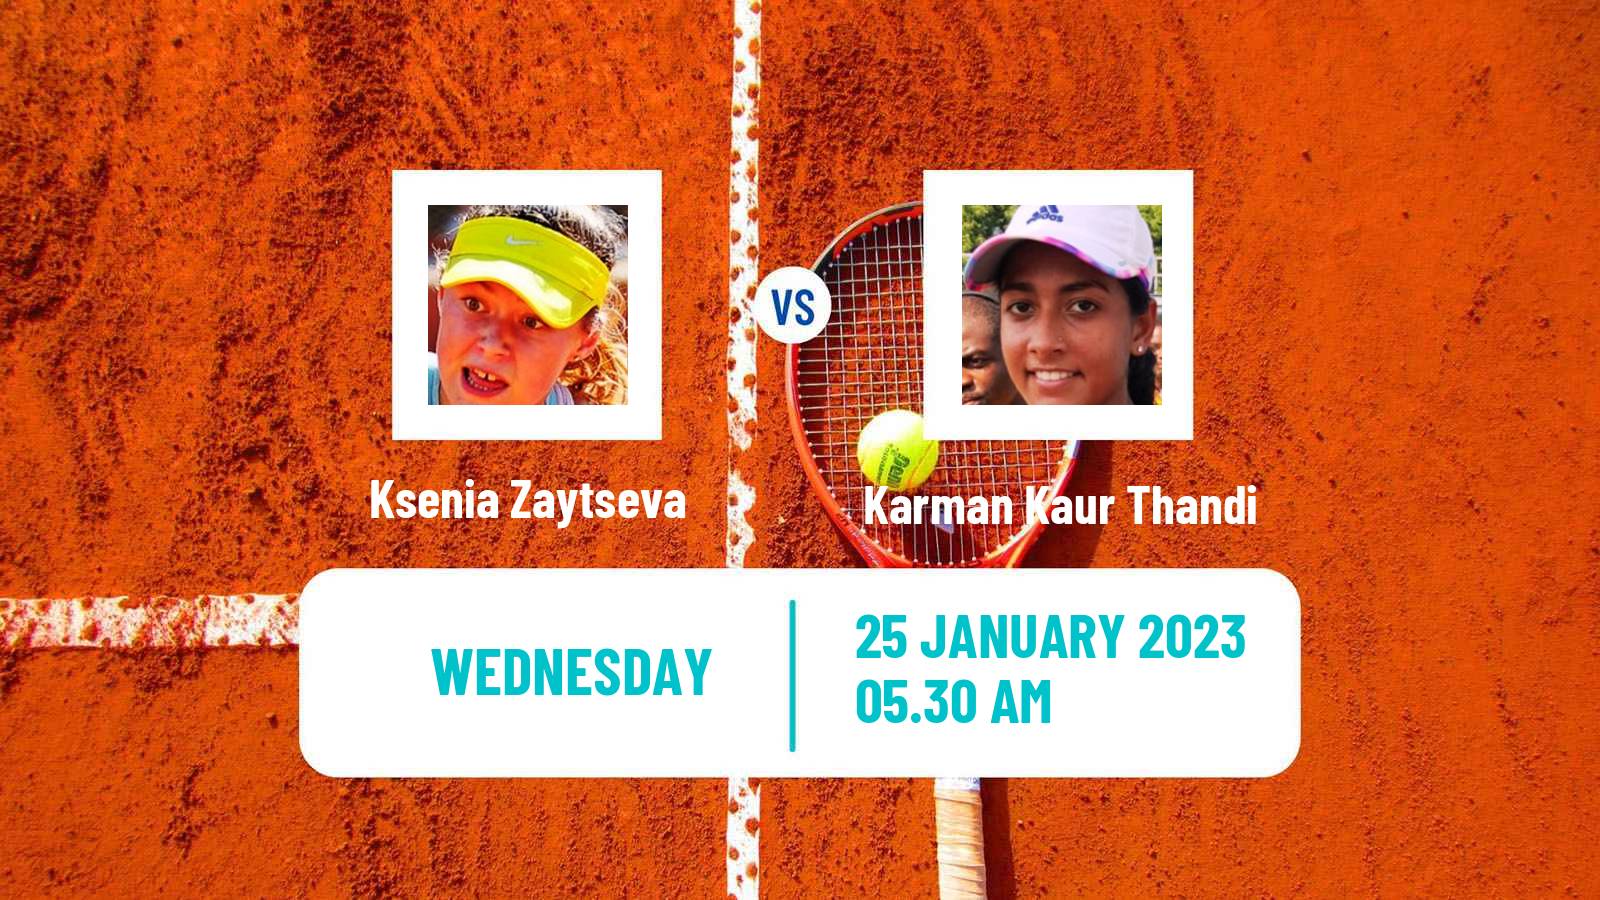 Tennis ITF Tournaments Ksenia Zaytseva - Karman Kaur Thandi